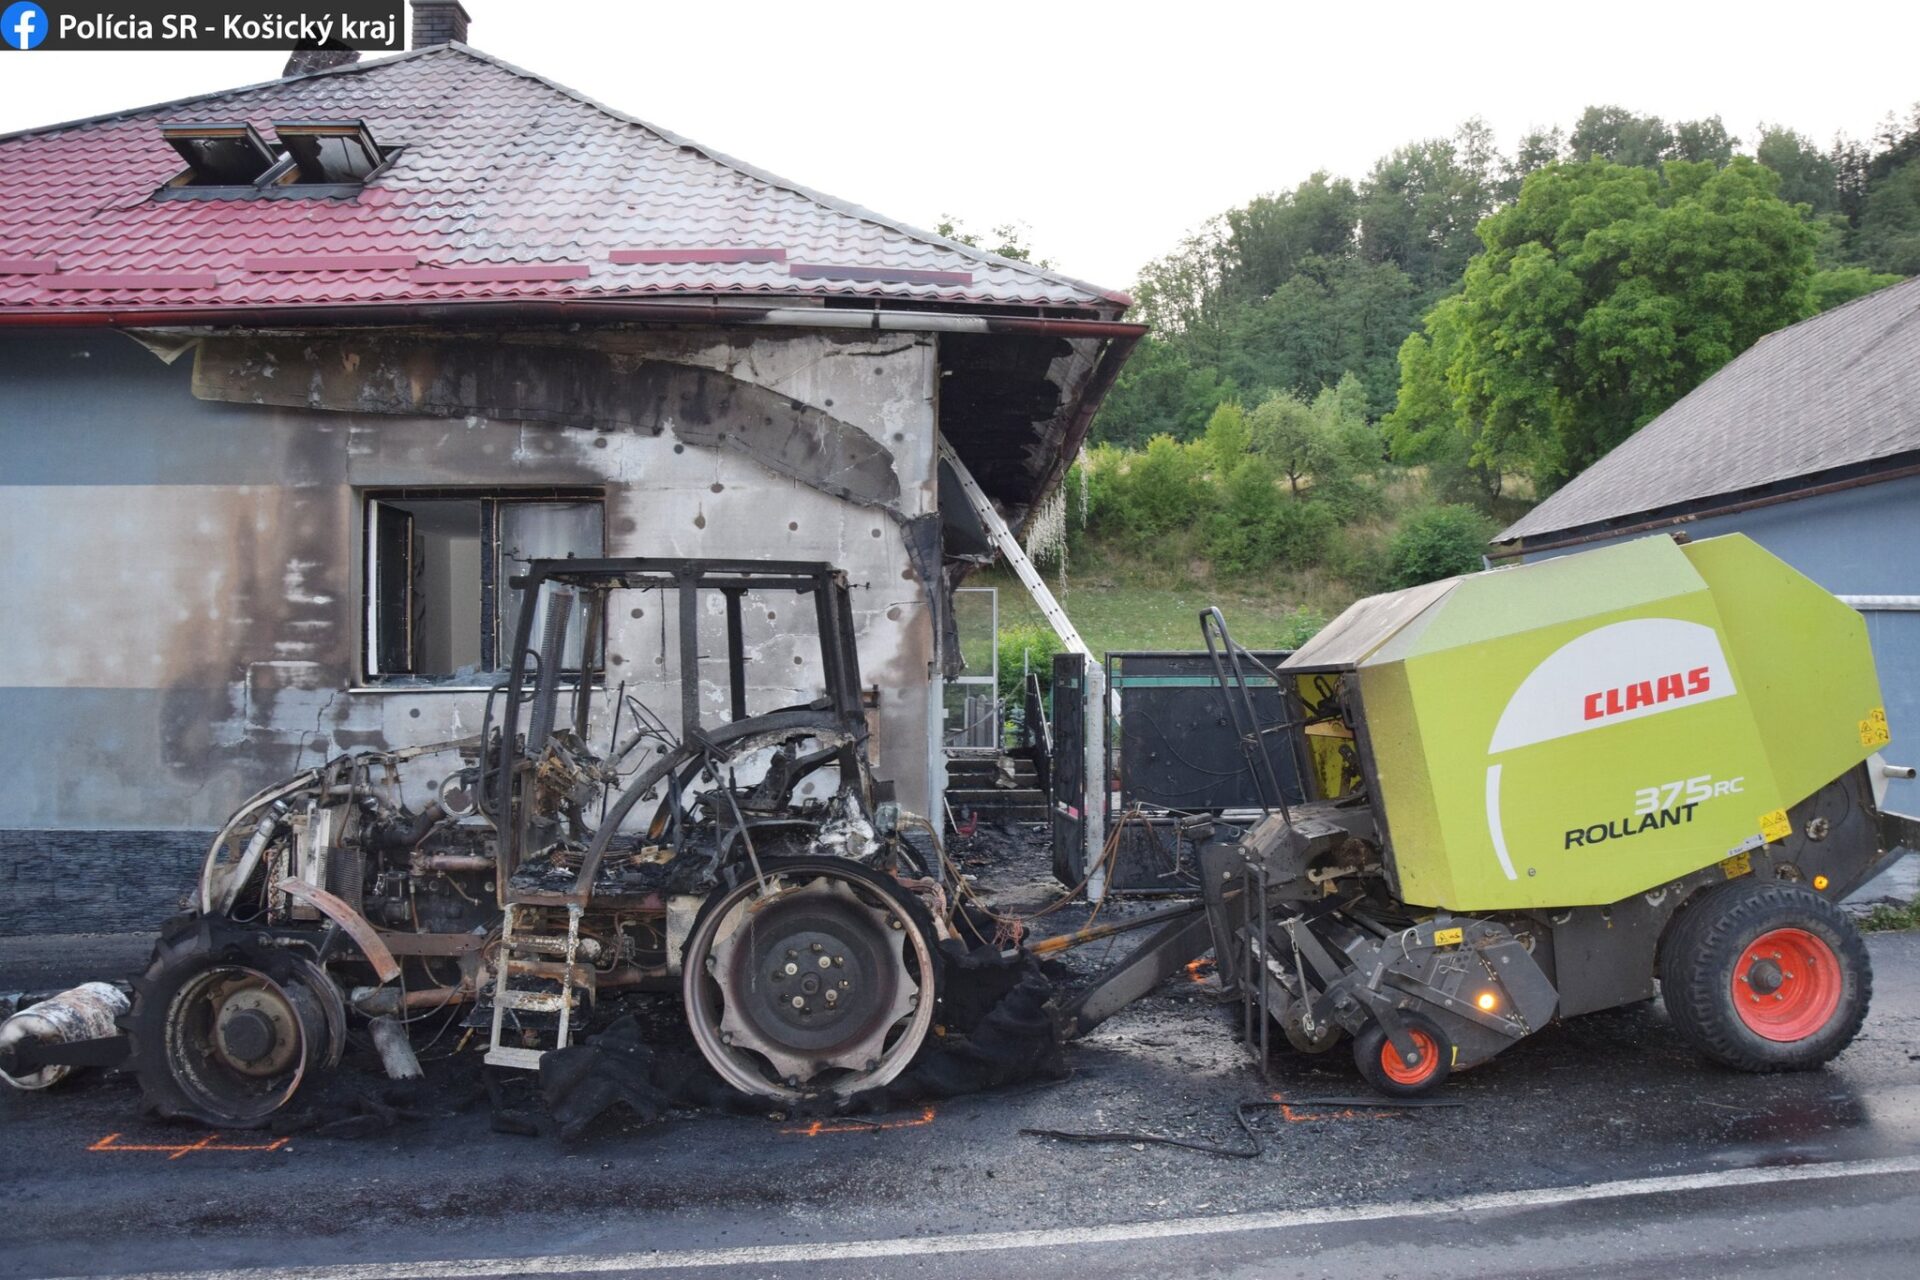 Požiar traktora sa rozšíril až na rodinný dom! (FOTO)